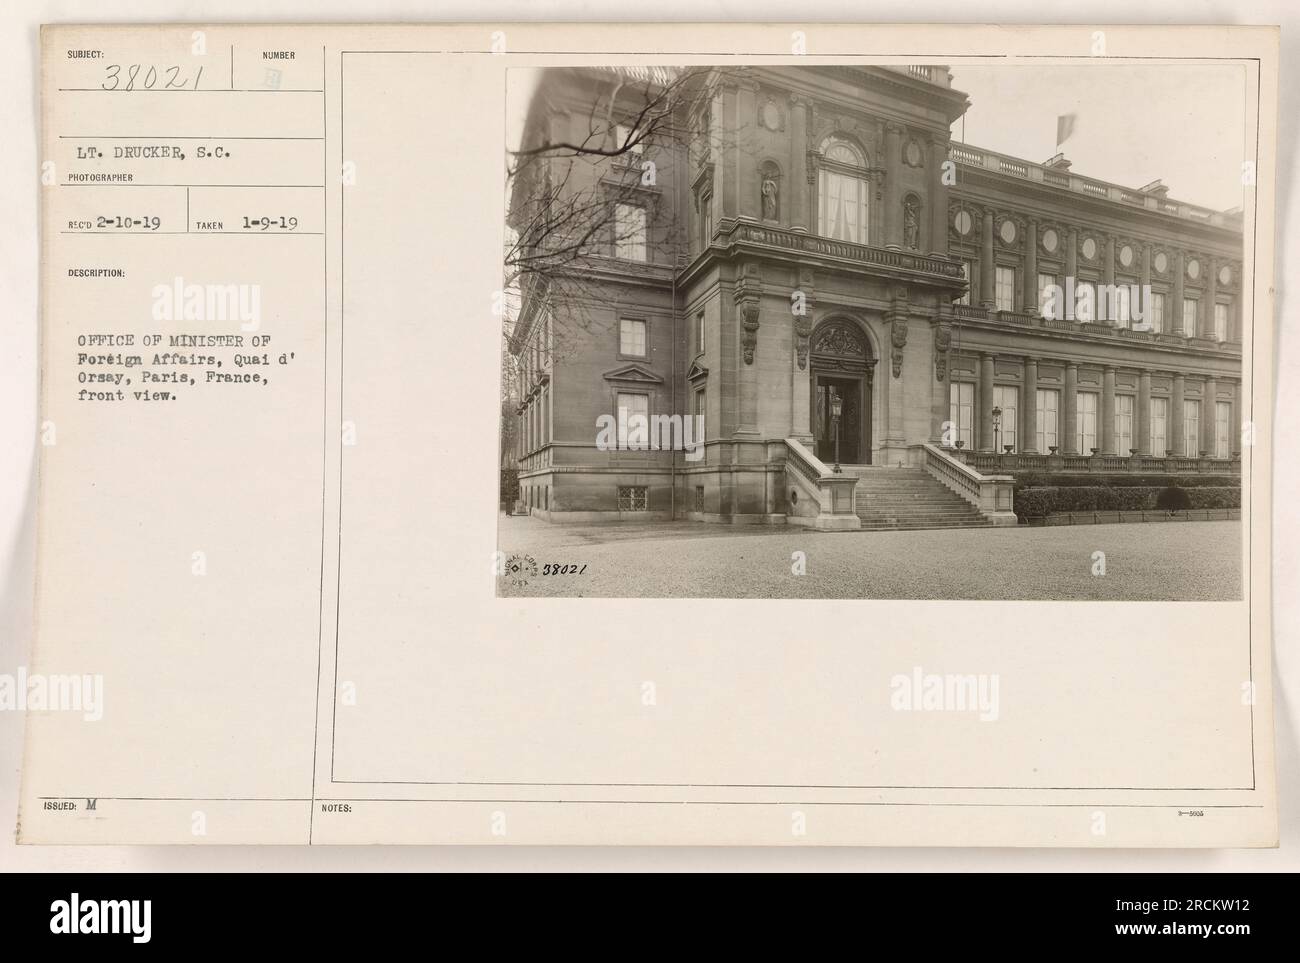 LT. Drucker, un fotografo della S.C., ha catturato questa immagine il 9 gennaio 1919. Mostra la visione anteriore dell'ufficio del ministro degli affari esteri al Quai d'Orsay a Parigi, in Francia. Il numero rilasciato alla fotografia è 3802/M. Foto Stock